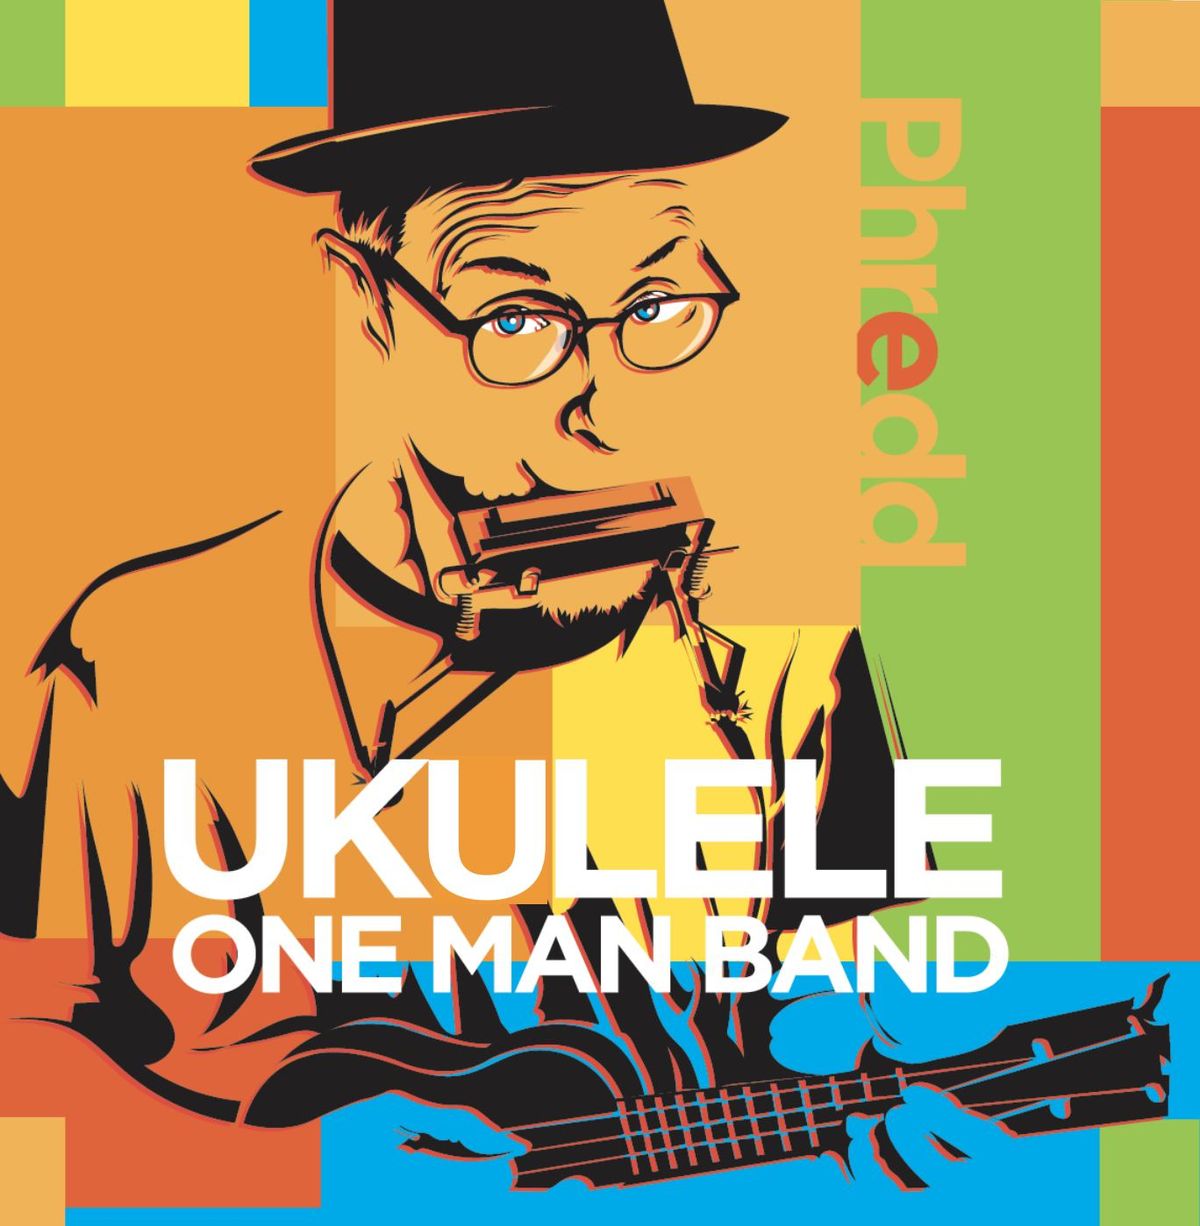 Phredd Ukulele One Man Band